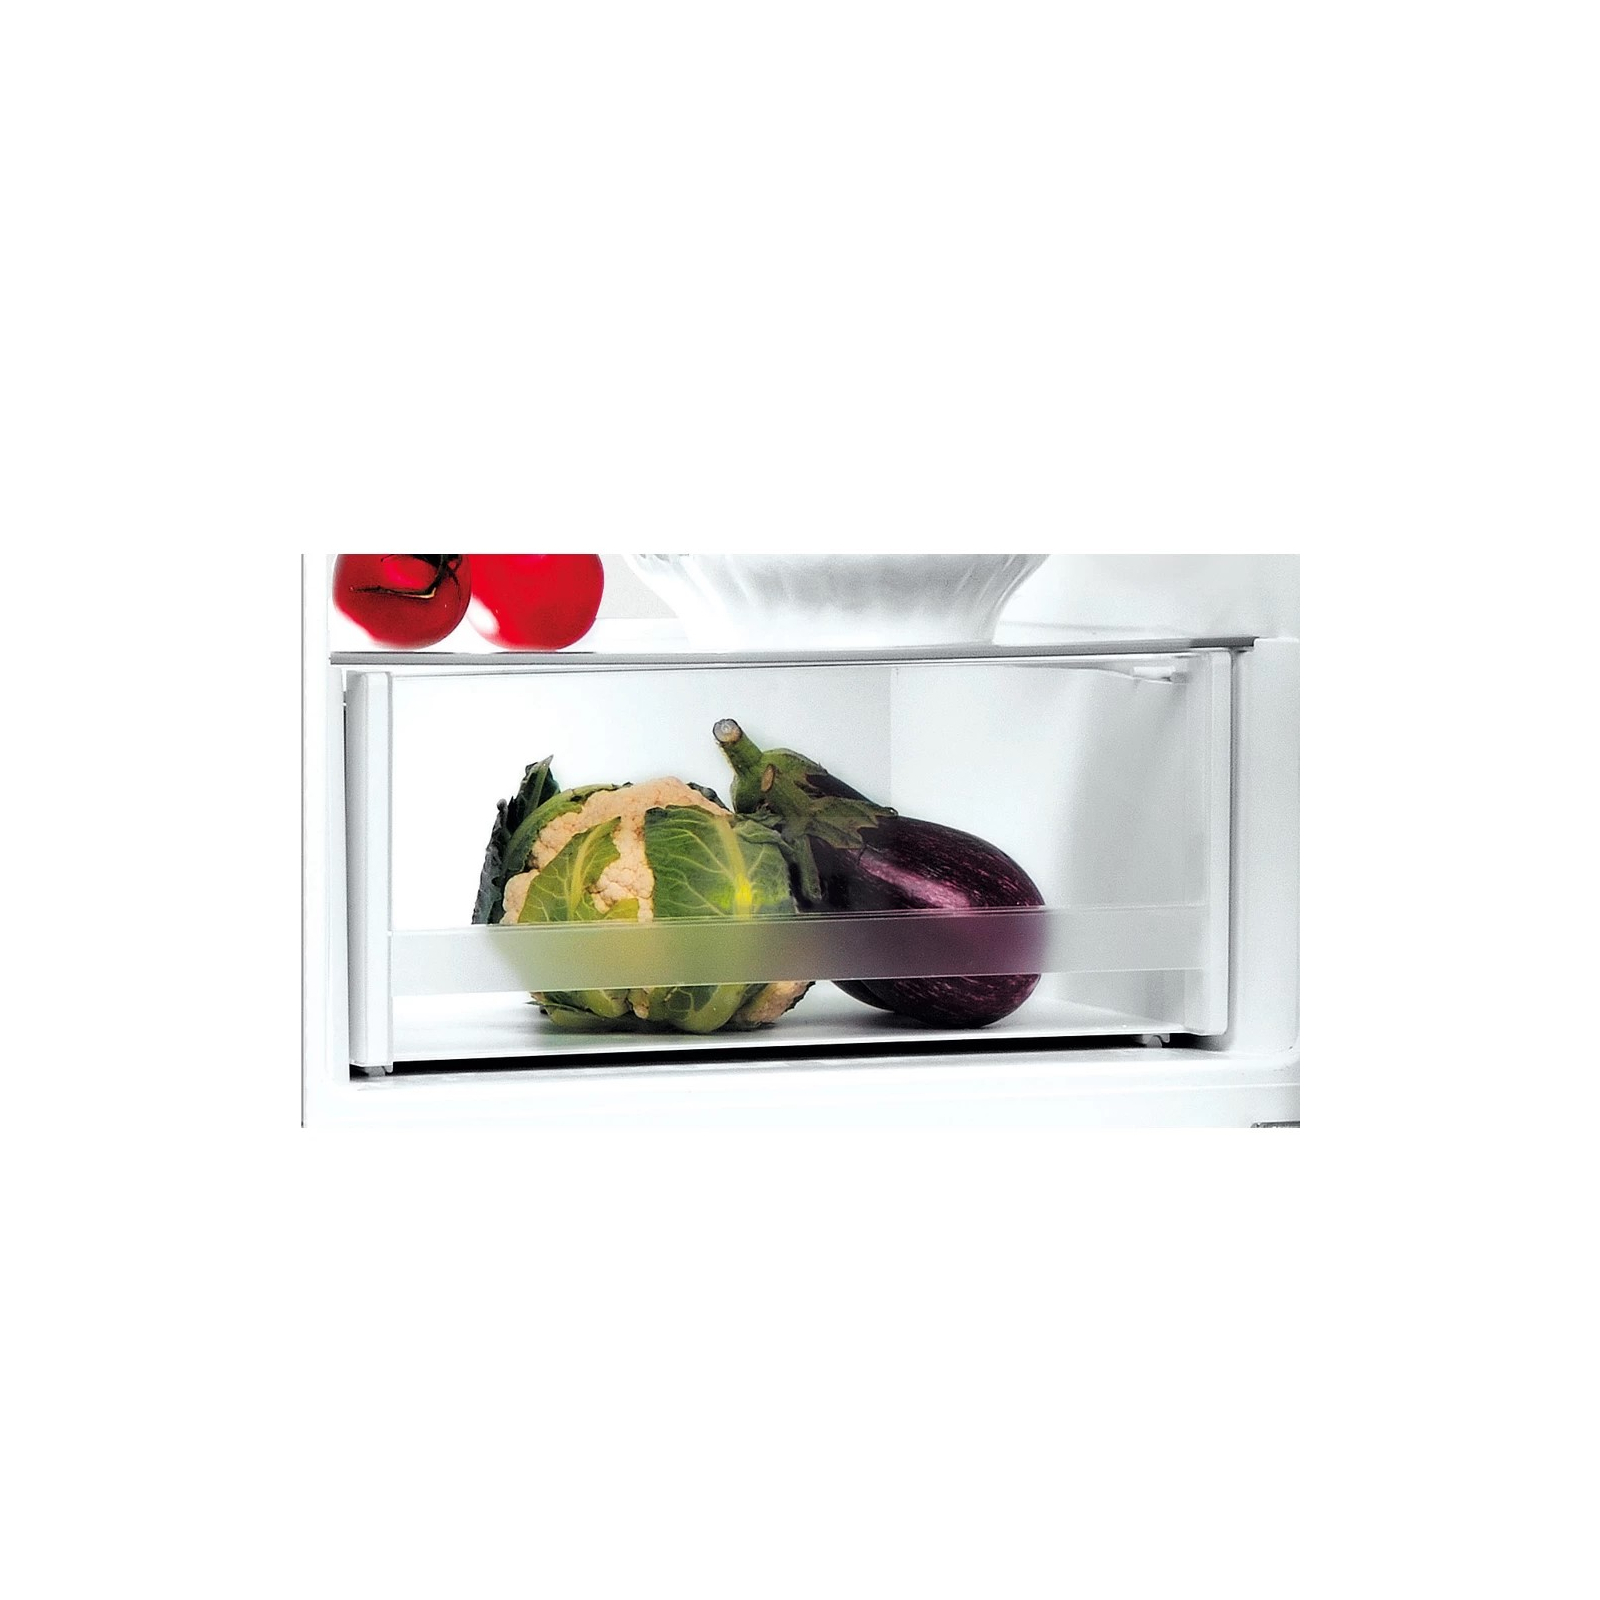 Холодильник Indesit LI8S1ES изображение 3